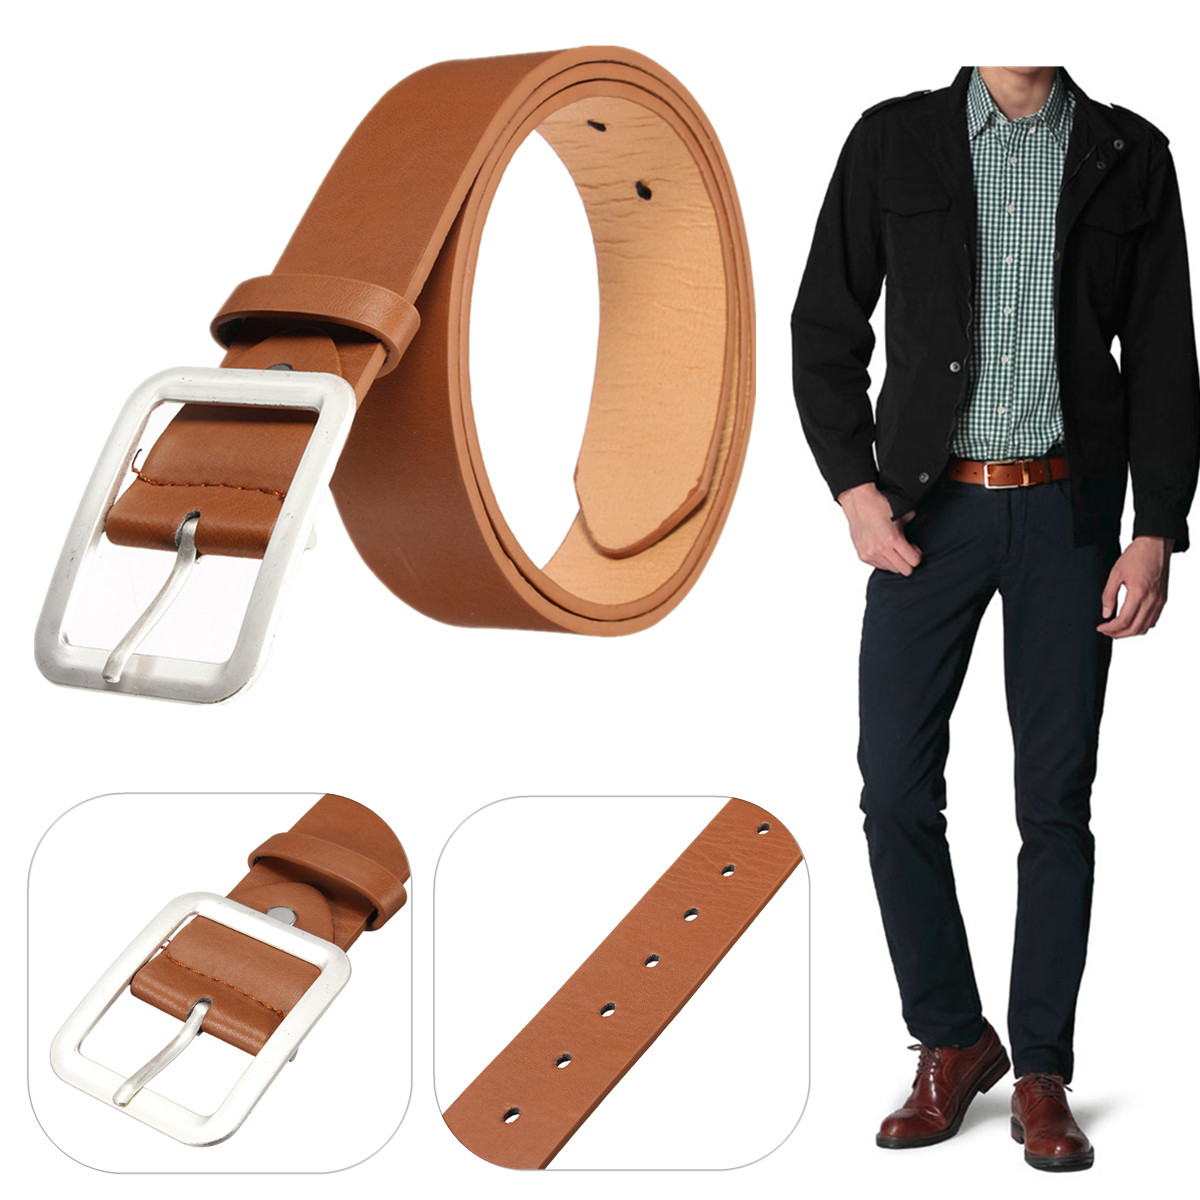 Men-Business-PU-Leather-Belt-Casual-Pin-Buckle-Waist-Strap-Waistband-1121542